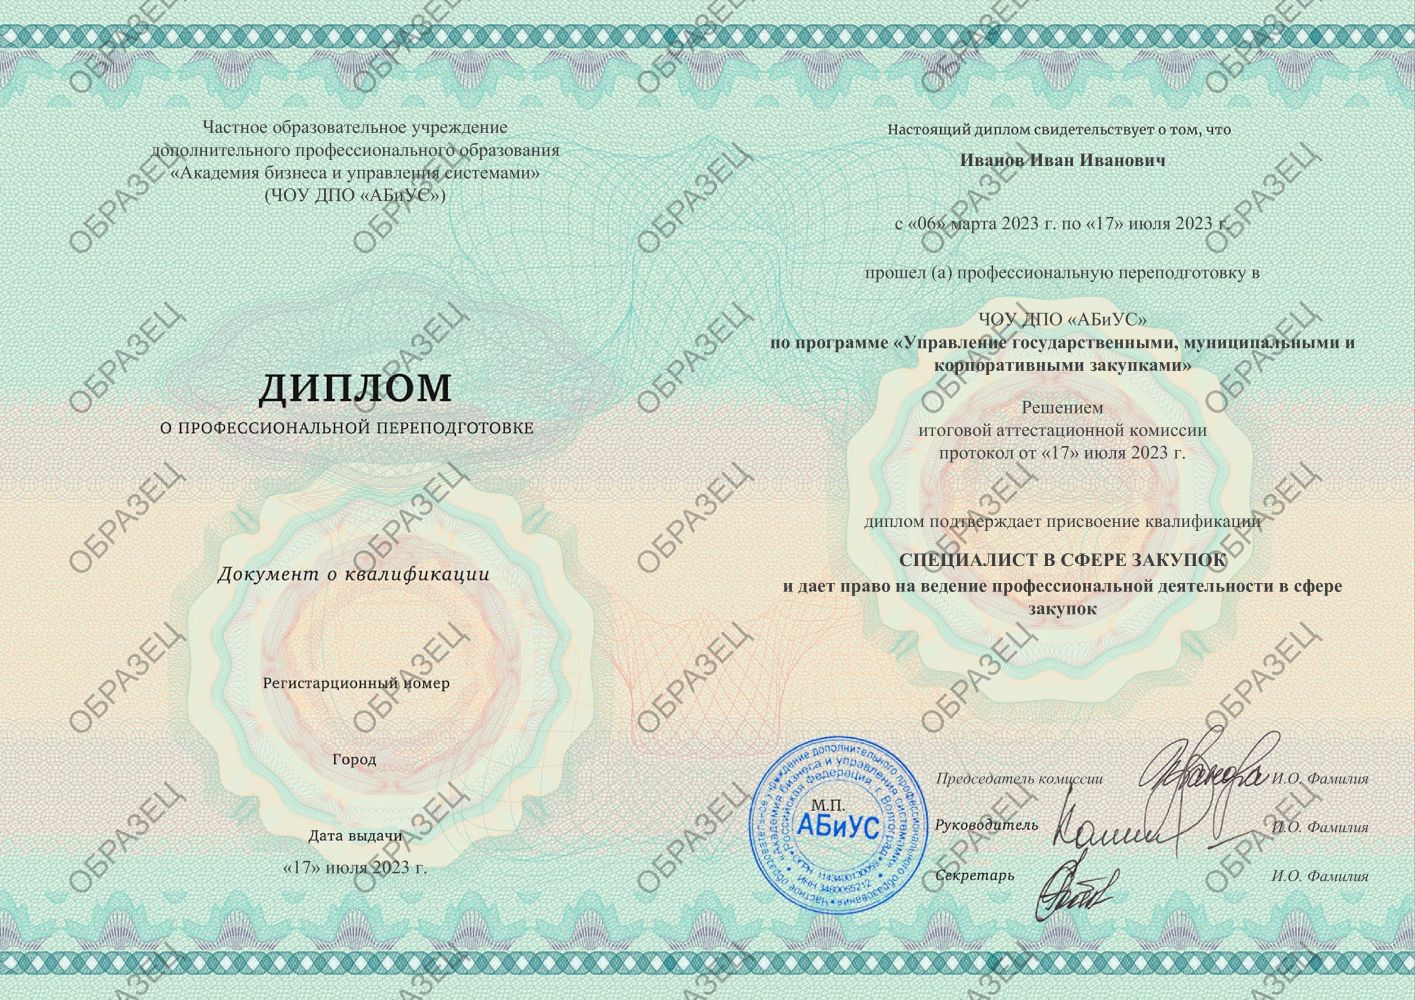 Диплом Управление государственными, муниципальными и корпоративными закупками 510 часов 21188 руб.